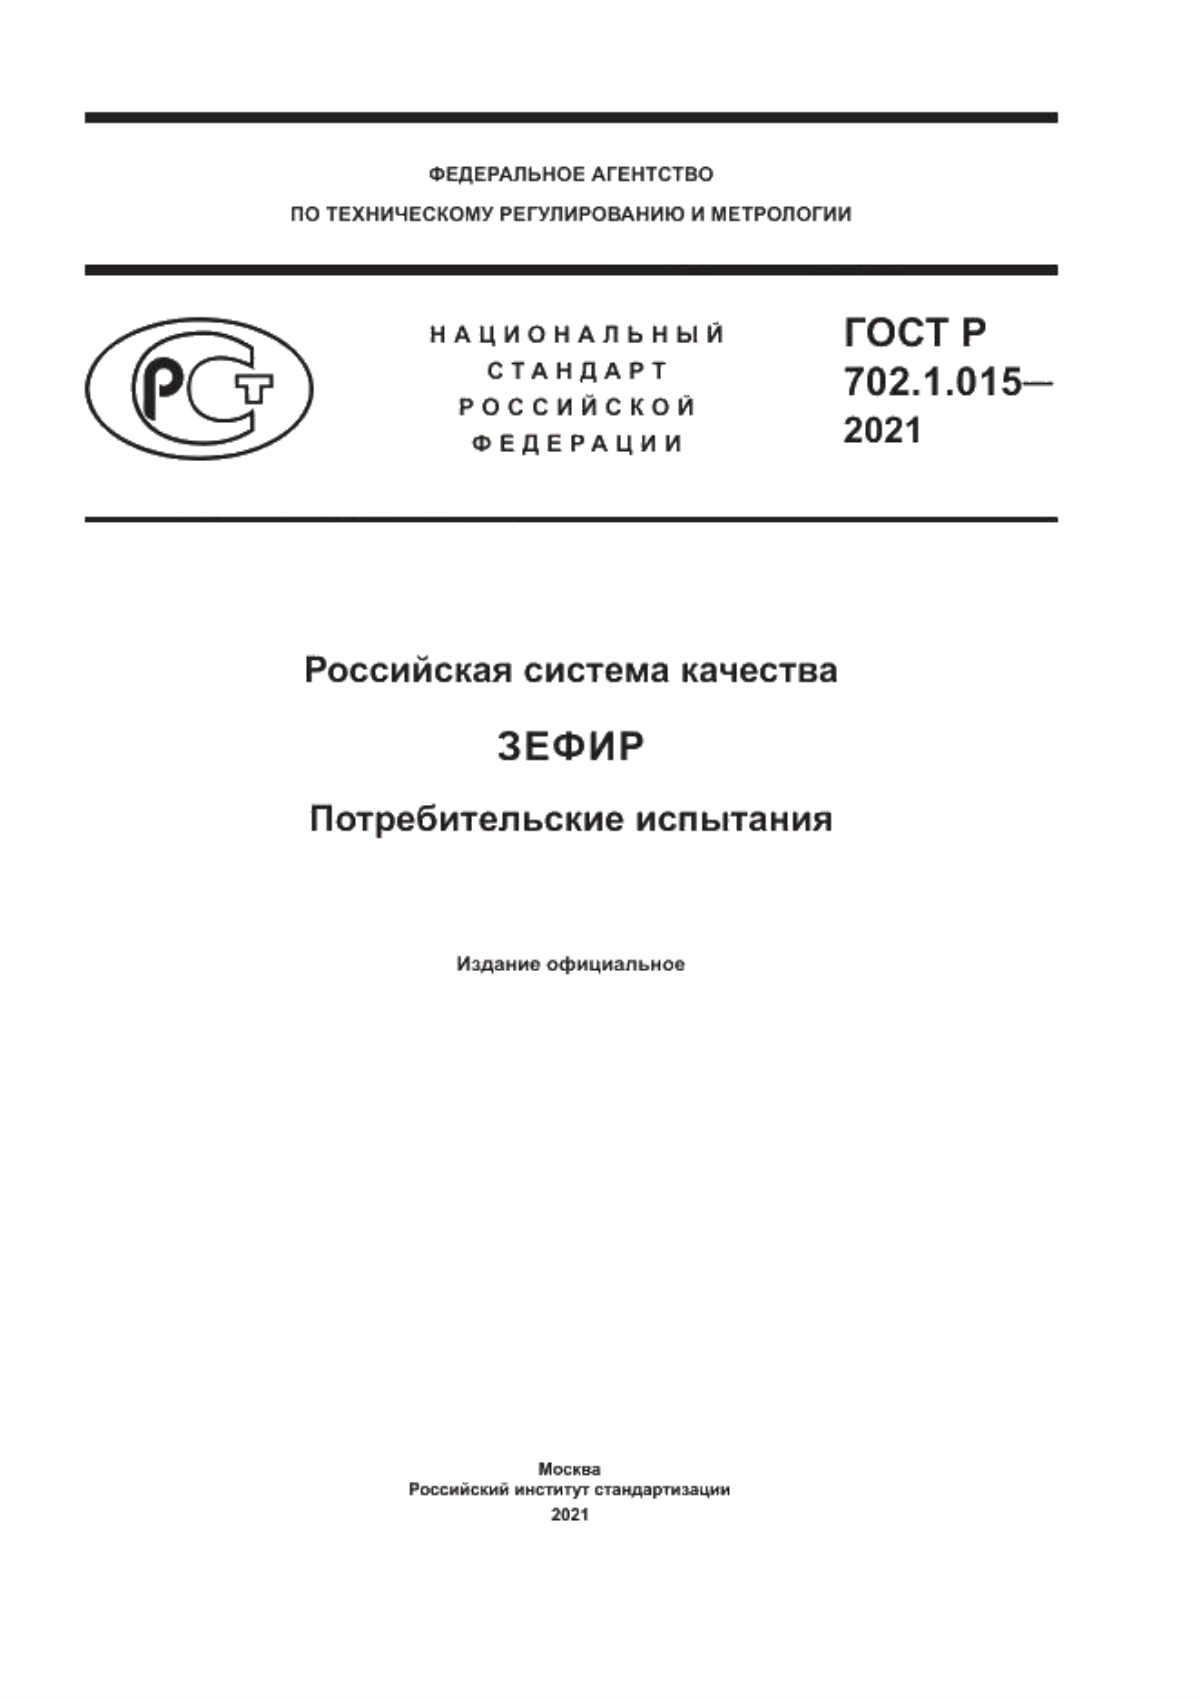 ГОСТ Р 702.1.015-2021 Российская система качества. Зефир. Потребительские испытания